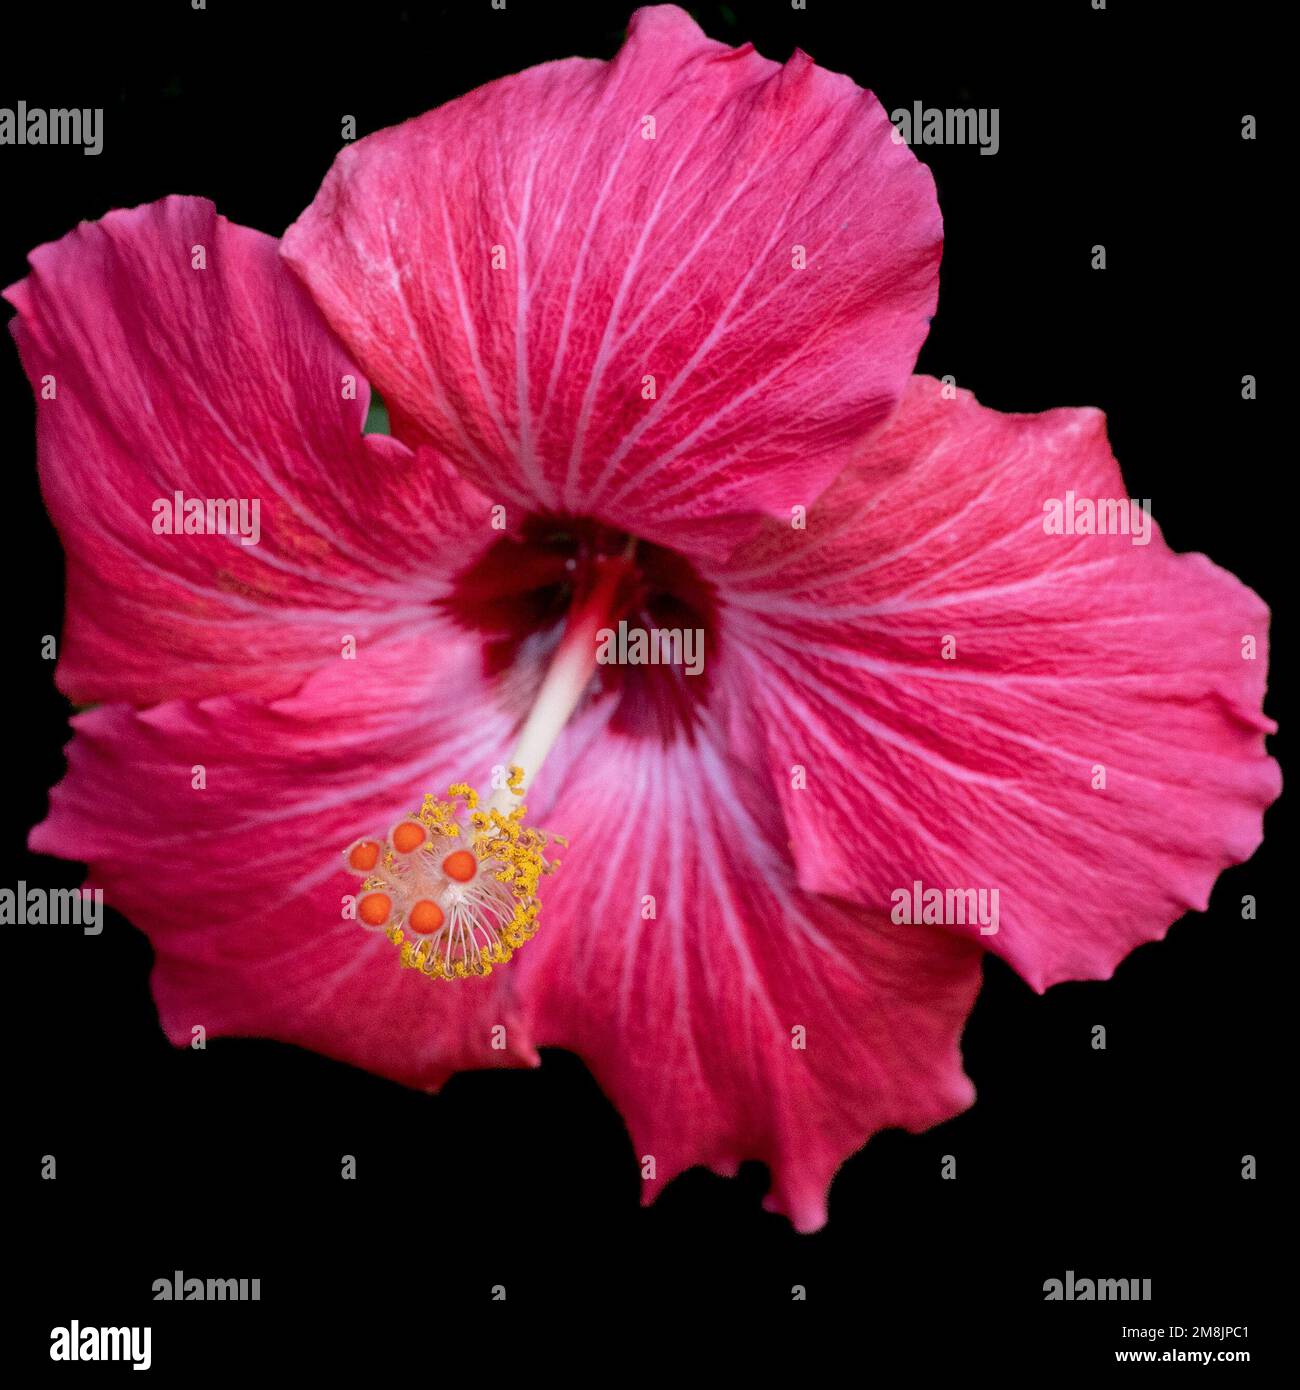 Hibiscus fiore, rosso, visto dal fronte, evidenziando lo stamen e i pistils delle strutture riproduttive, rosa-sinensis contro backgrou nero Foto Stock